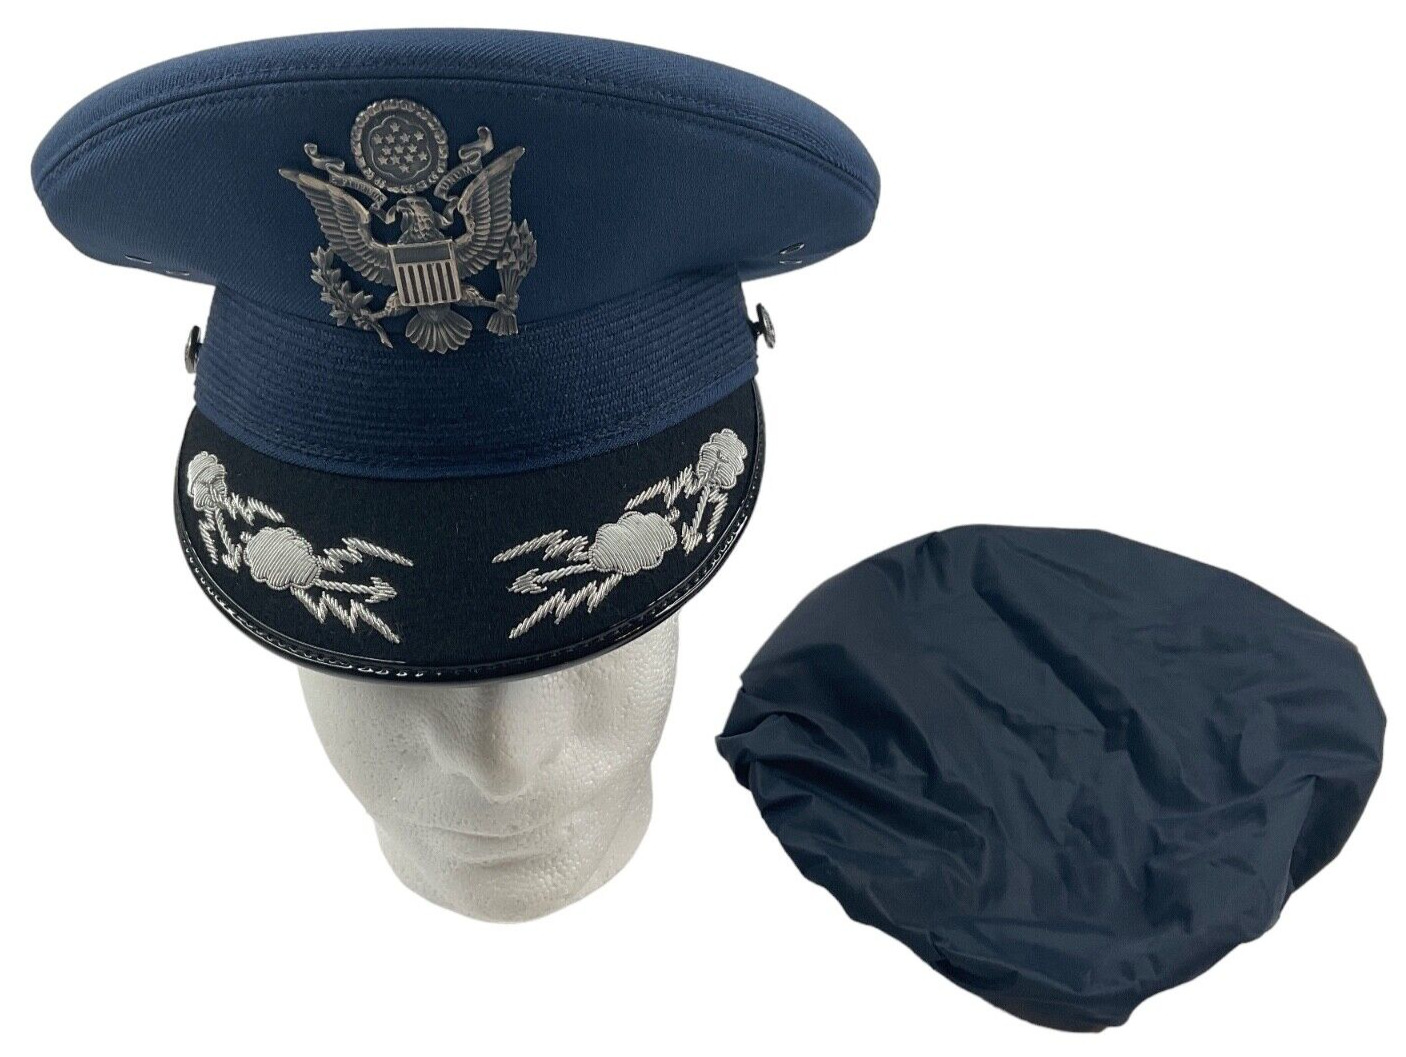 USAF Air Force Size 7 1/8 Field Grade Officer Dress Blue Service Hat Cap Bernard